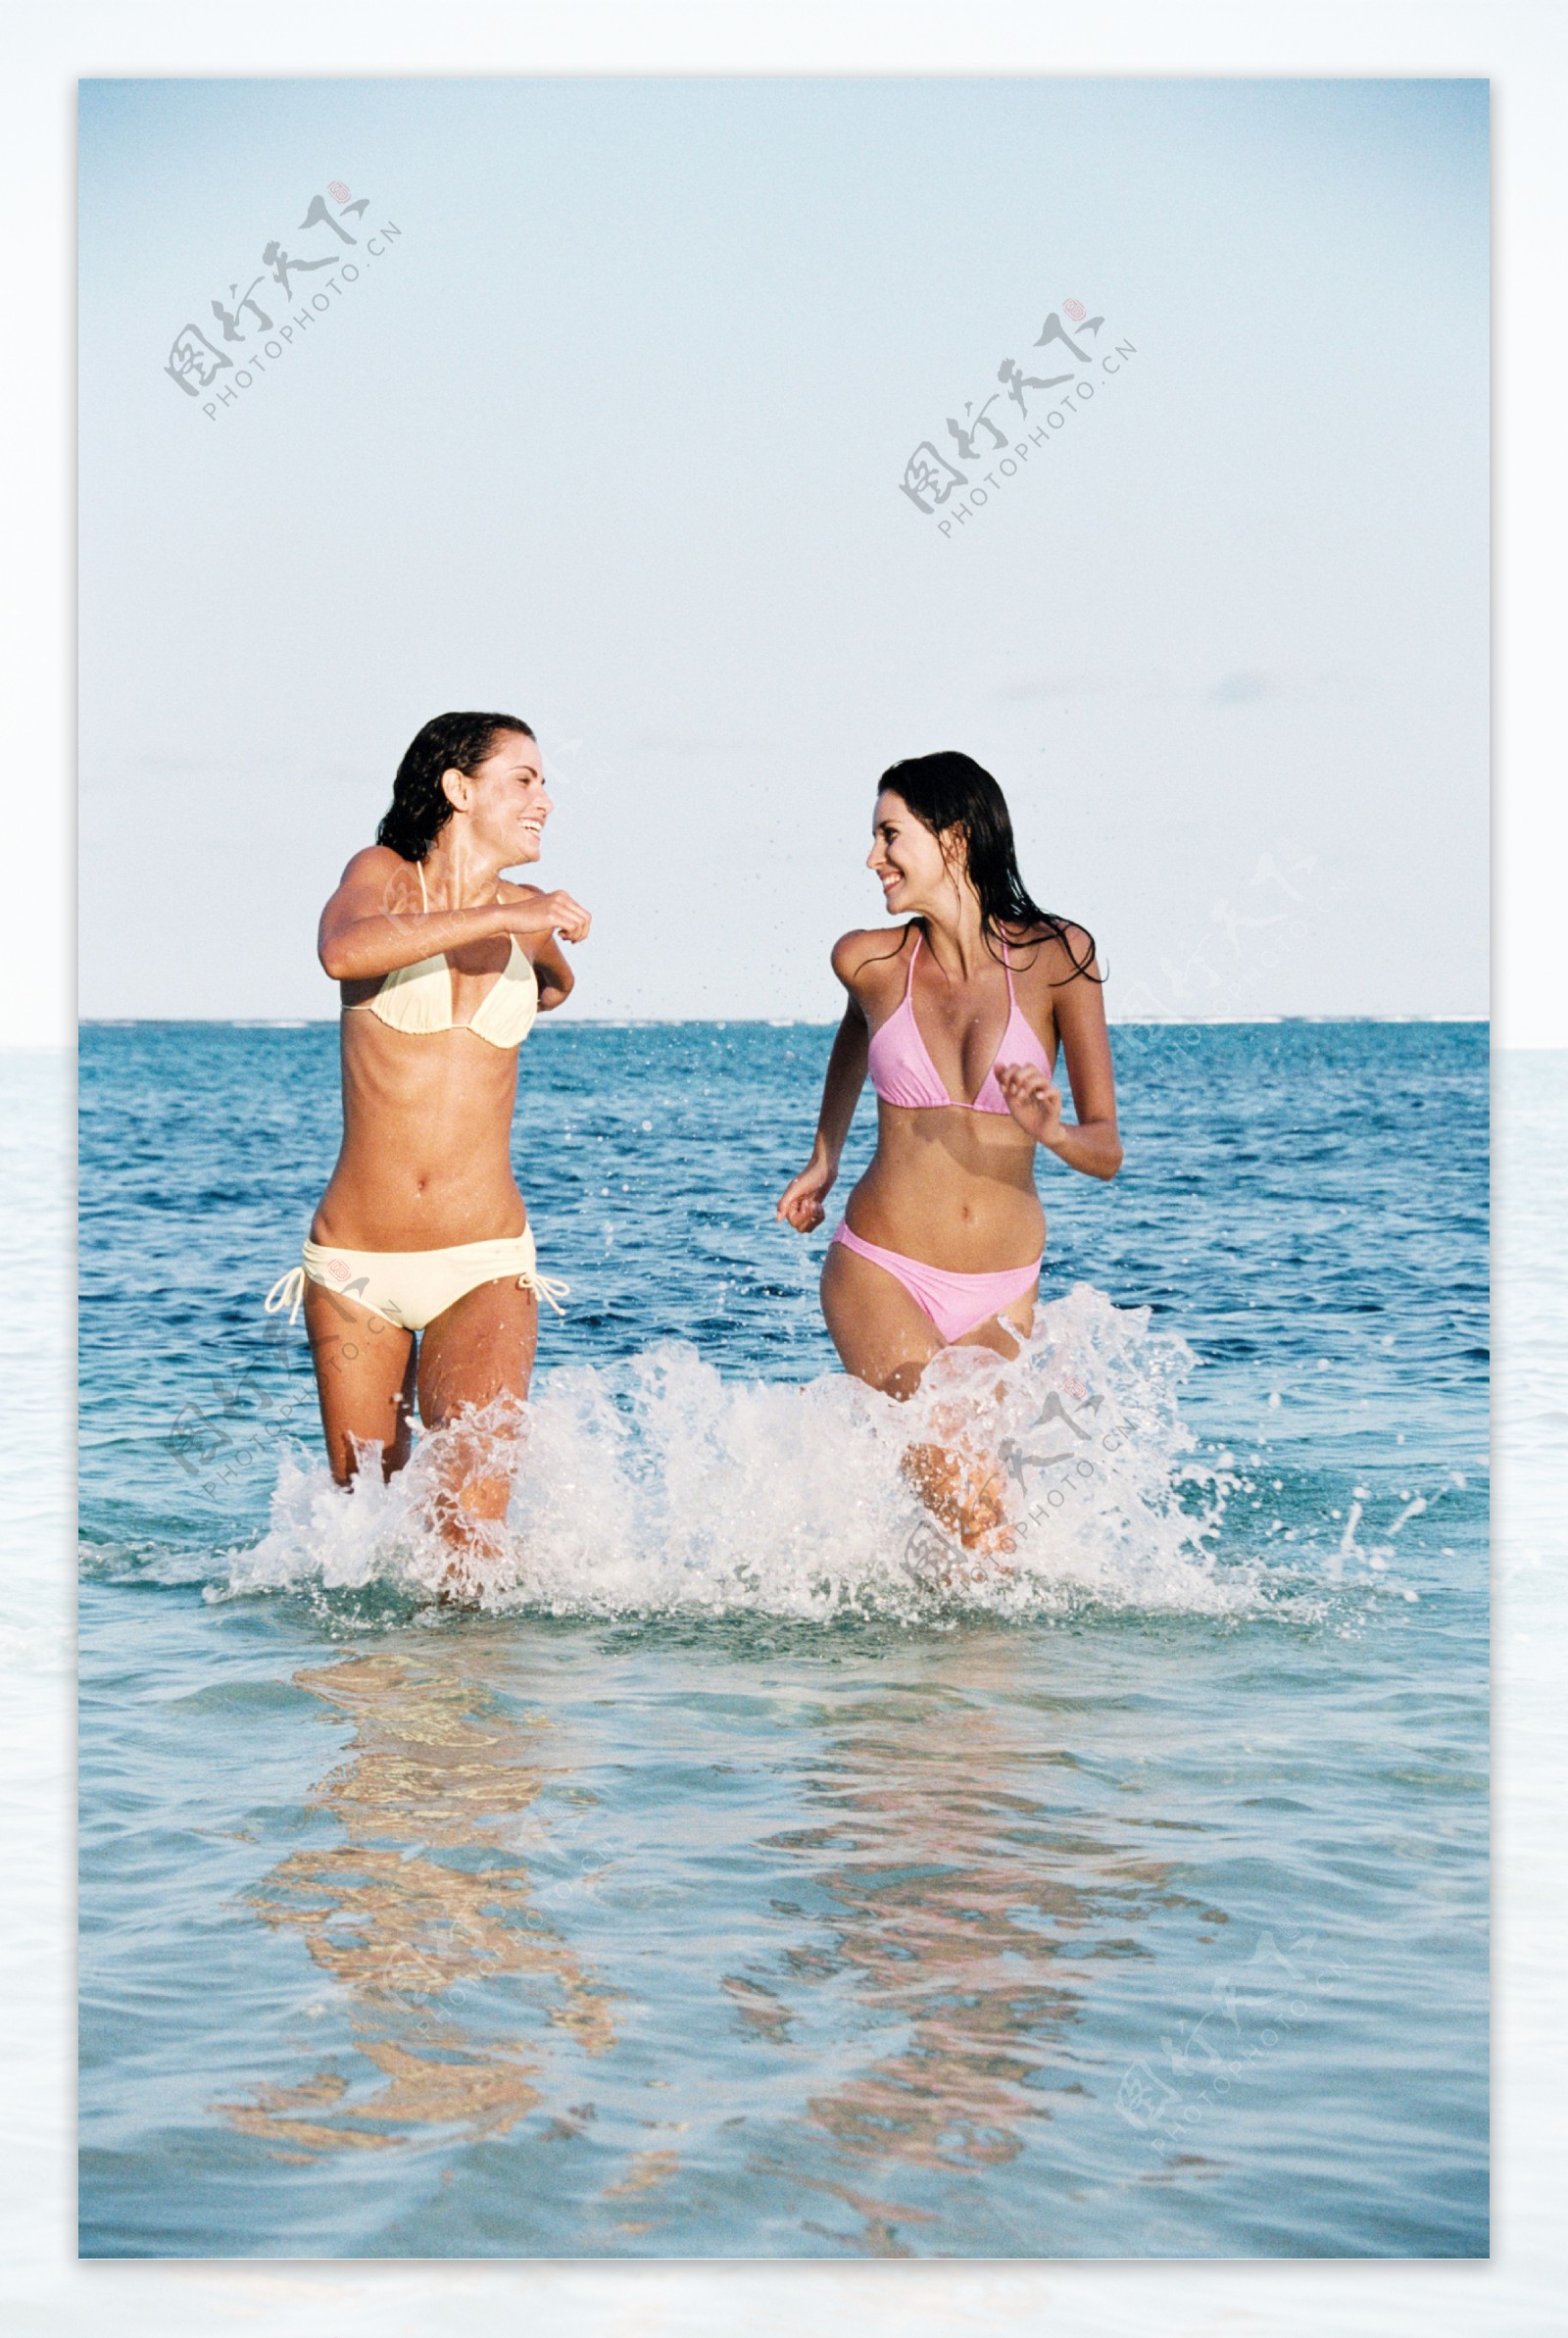 海水中奔跑的两个美女图片